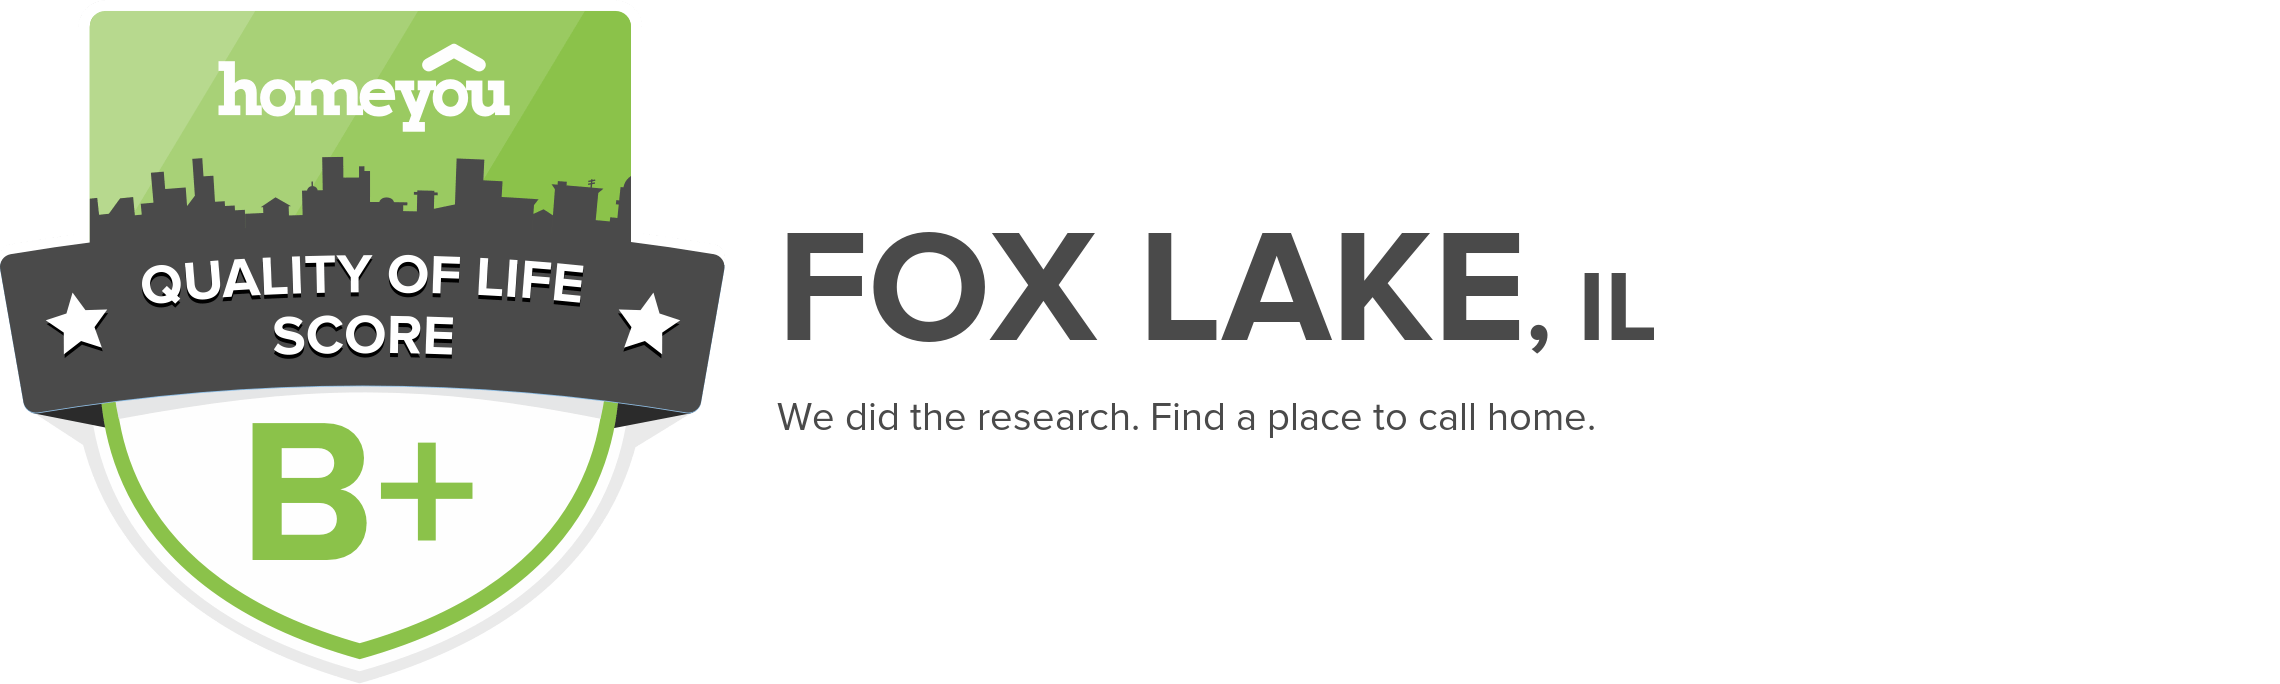 Fox Lake, IL